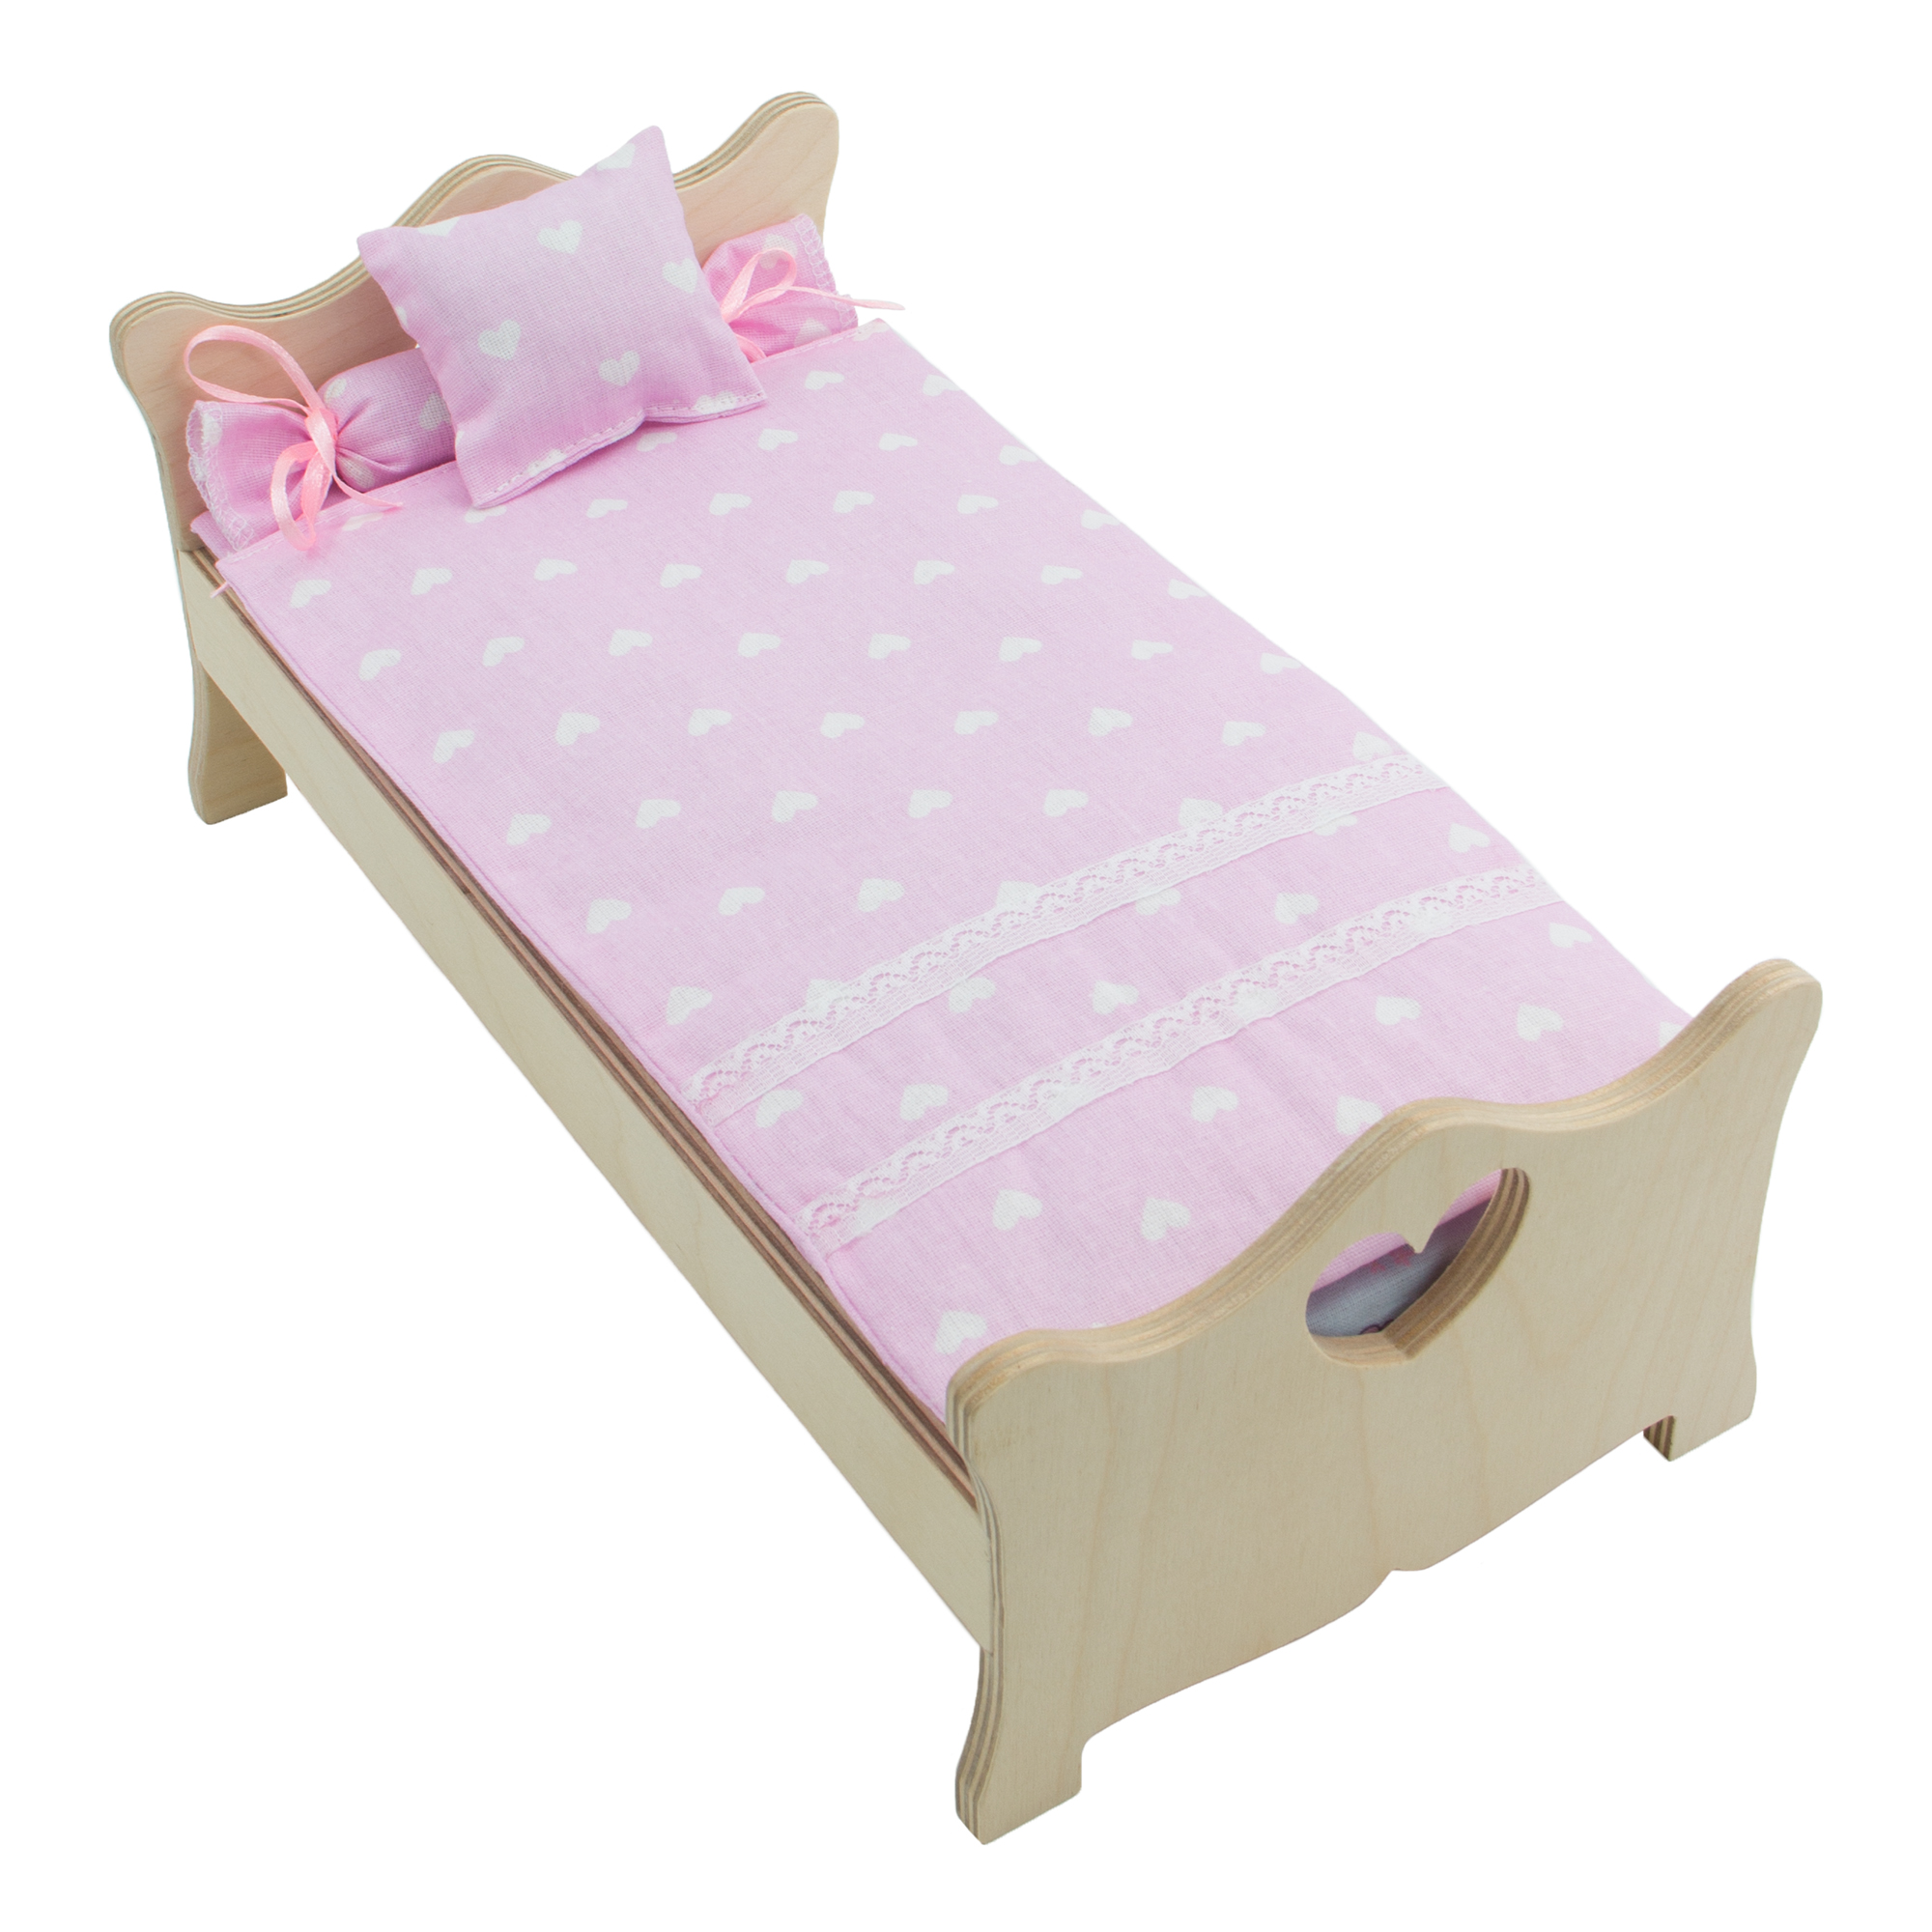 Комплект постельного белья Модница для куклы 29 см бледно-розовый 2002бледно-розовый - фото 5